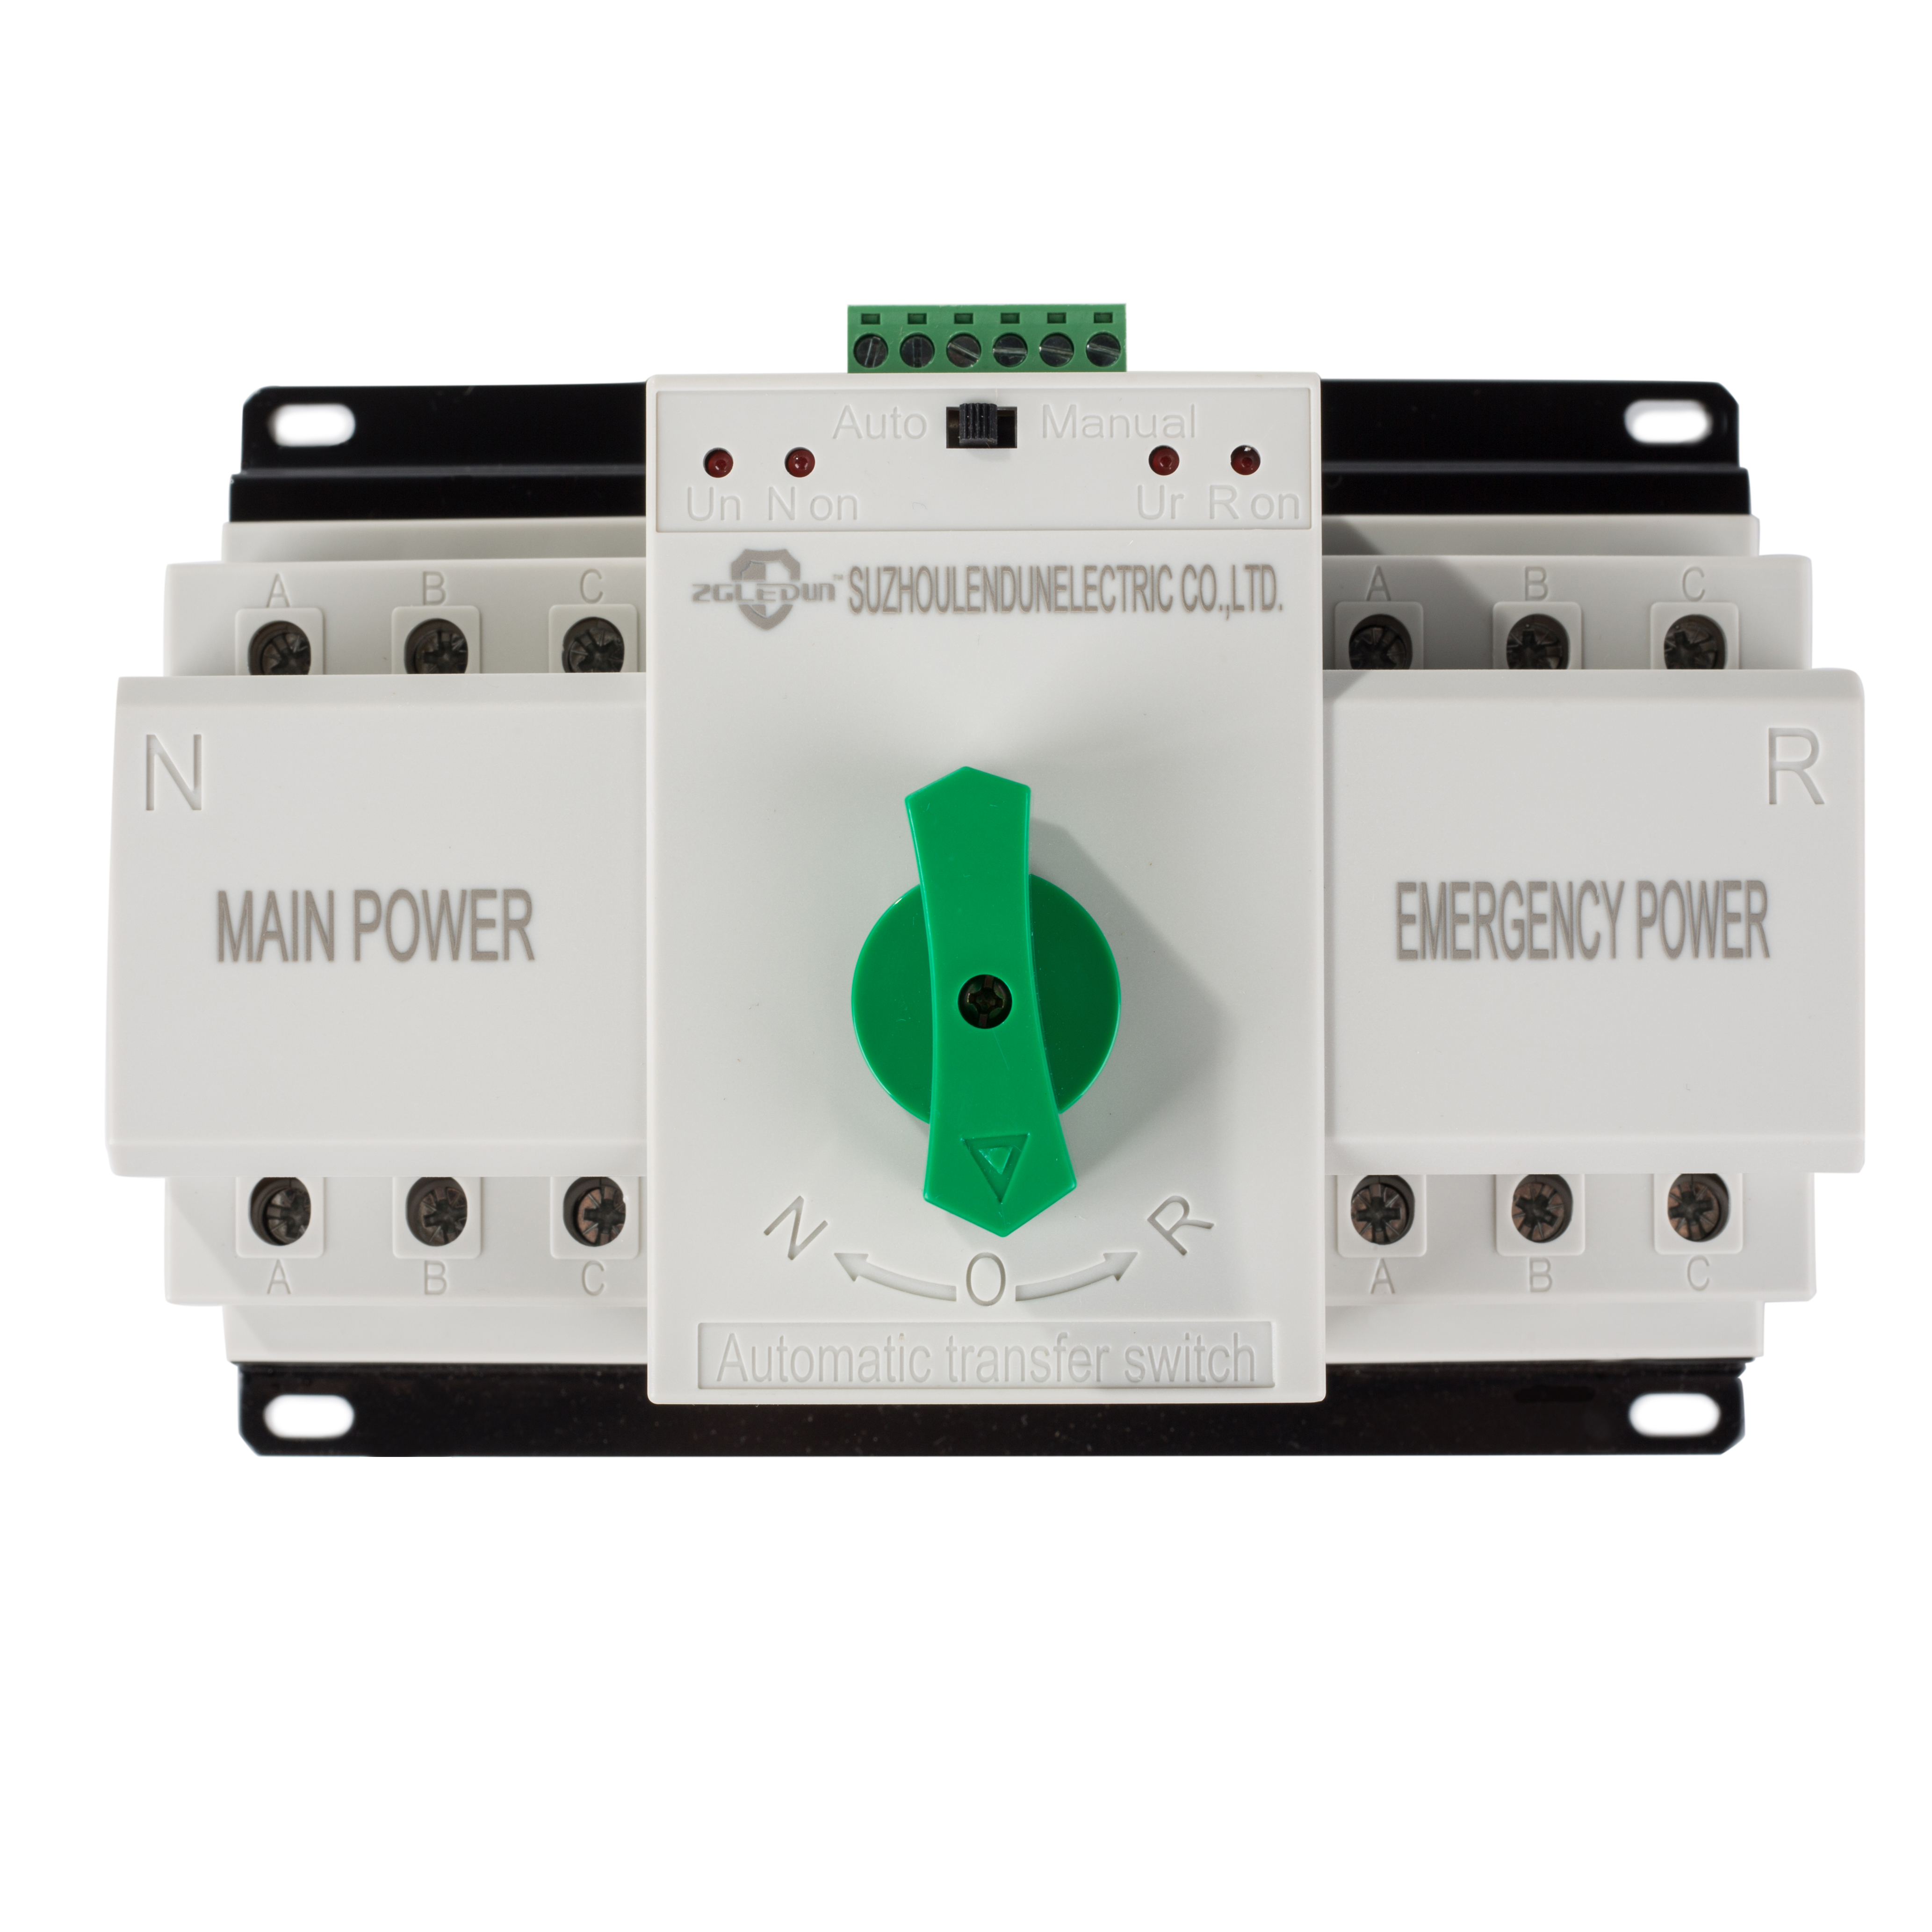 CB Level Mini Dual Power automatikus átviteli kapcsoló, ATSE 2P, 3P, 4P 63A, Intelligens átváltó kapcsoló Kiemelt kép